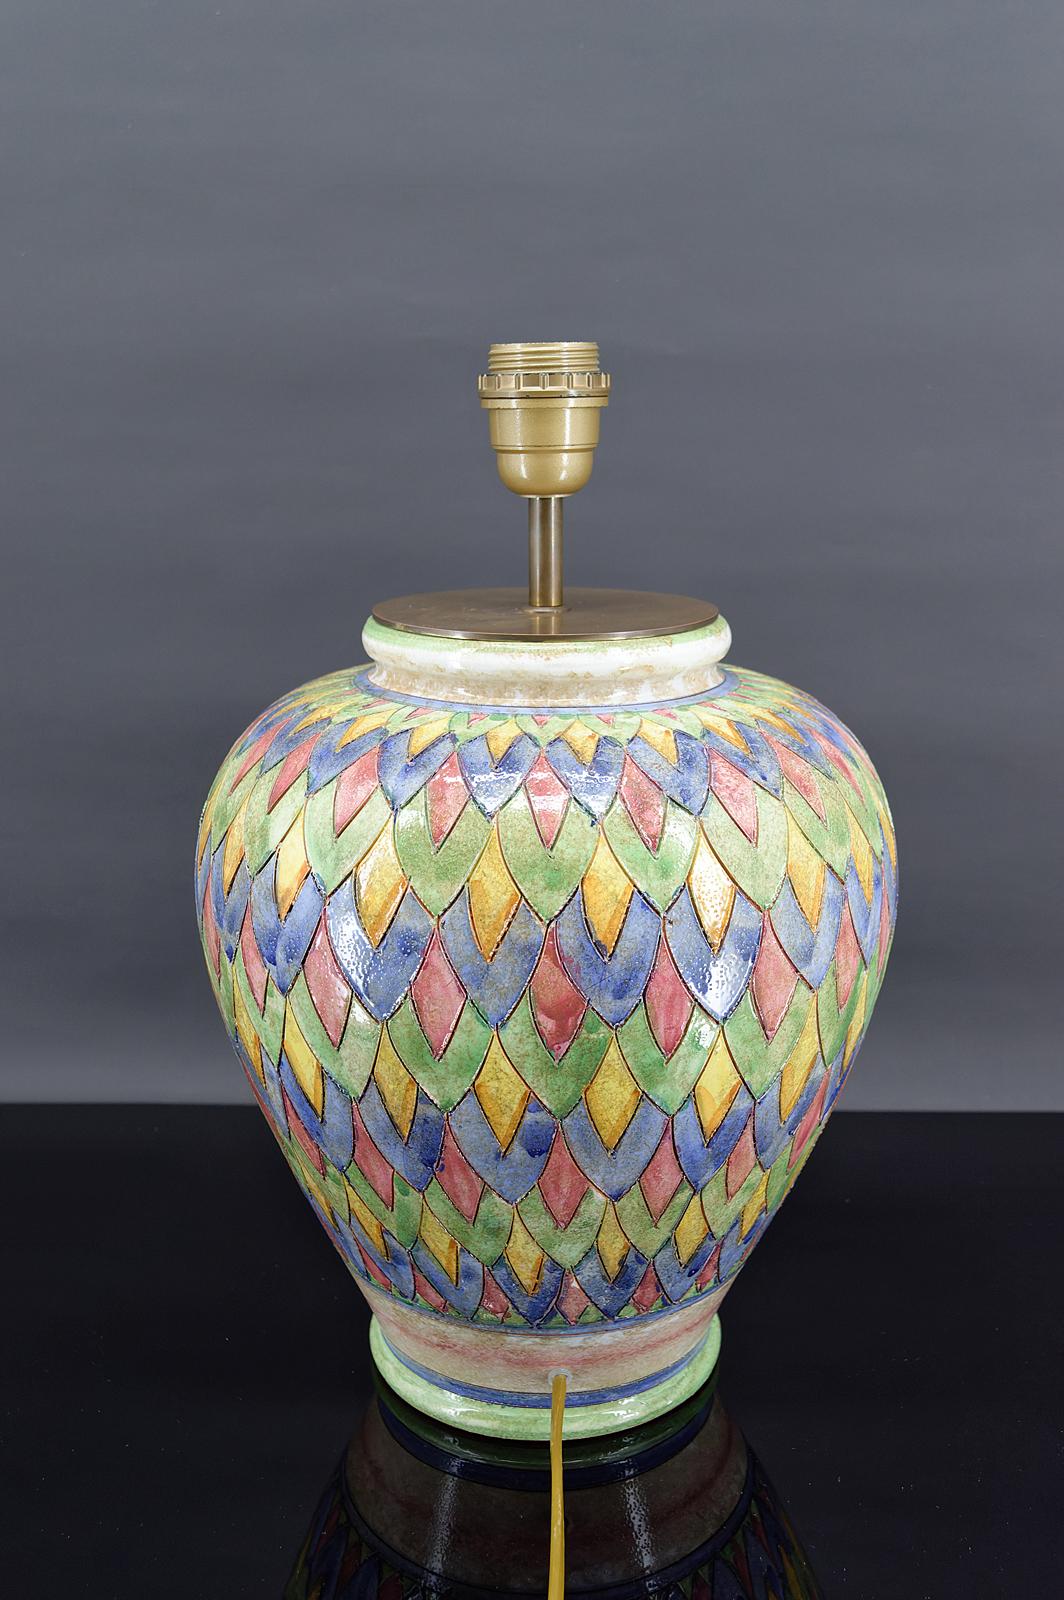 Ceramic Deruta ceramic lamp, Italy, circa 1970-1980